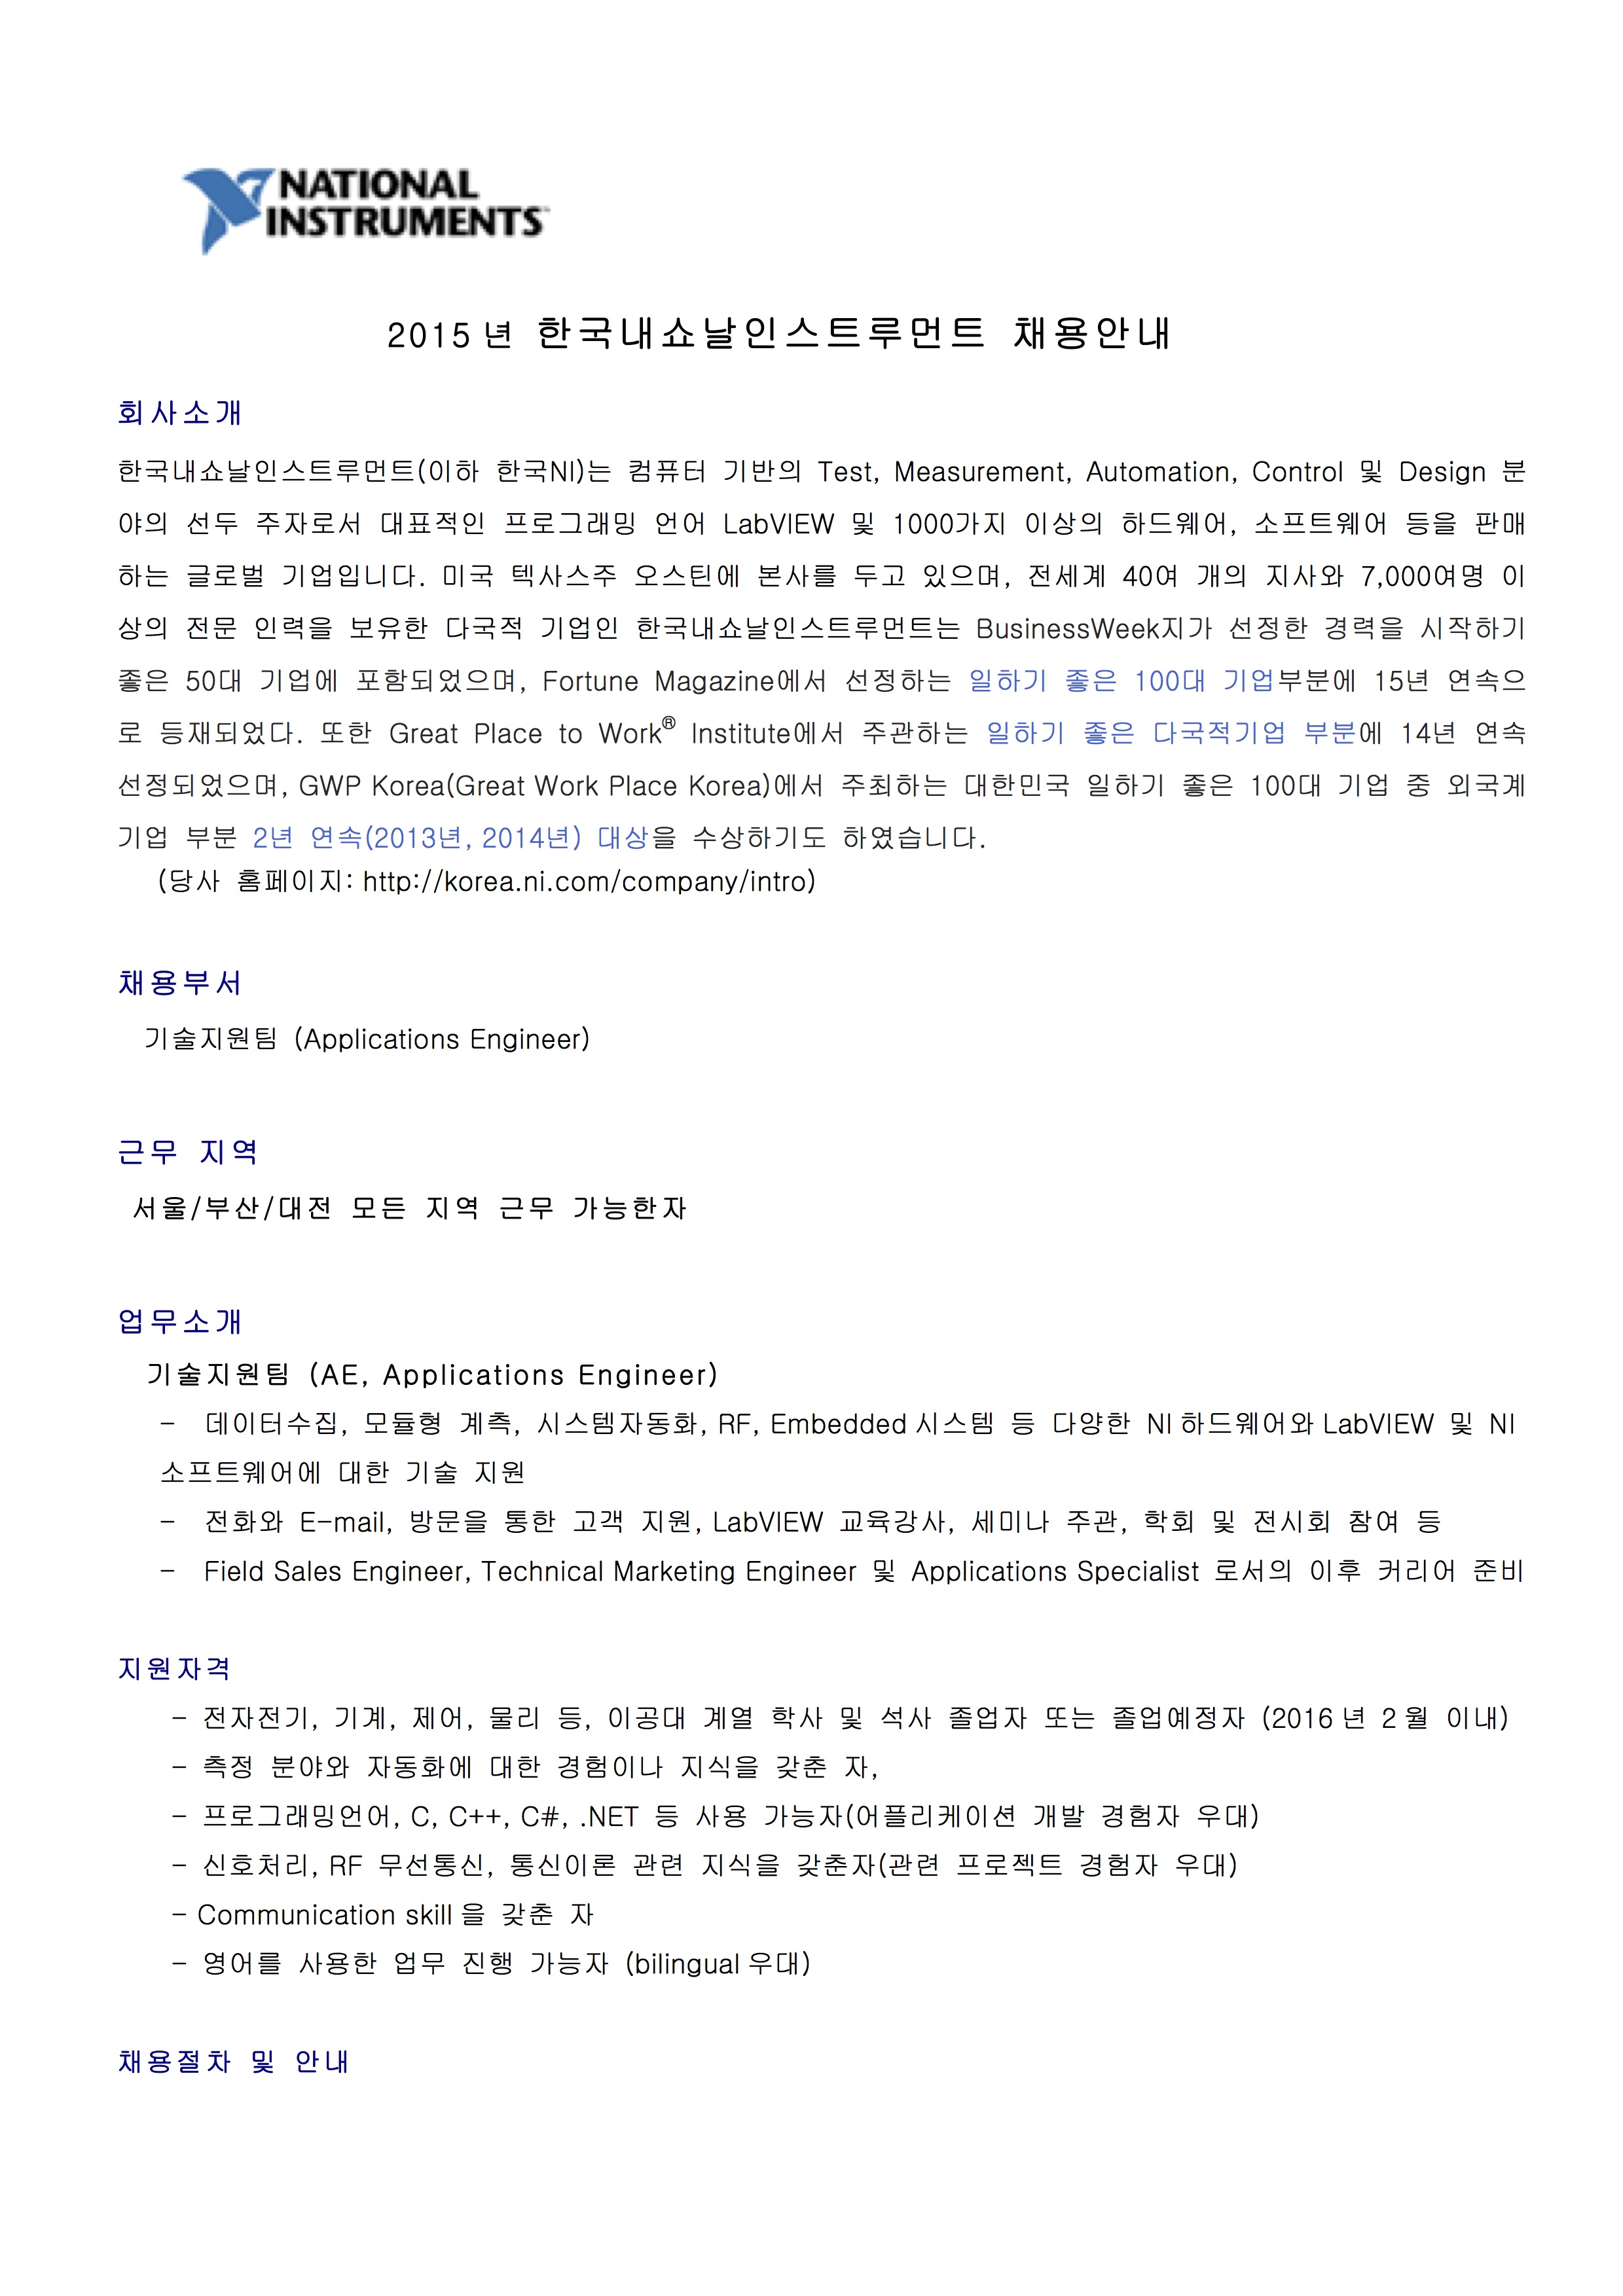 한국NI AE 채용공고_201510-2.jpg